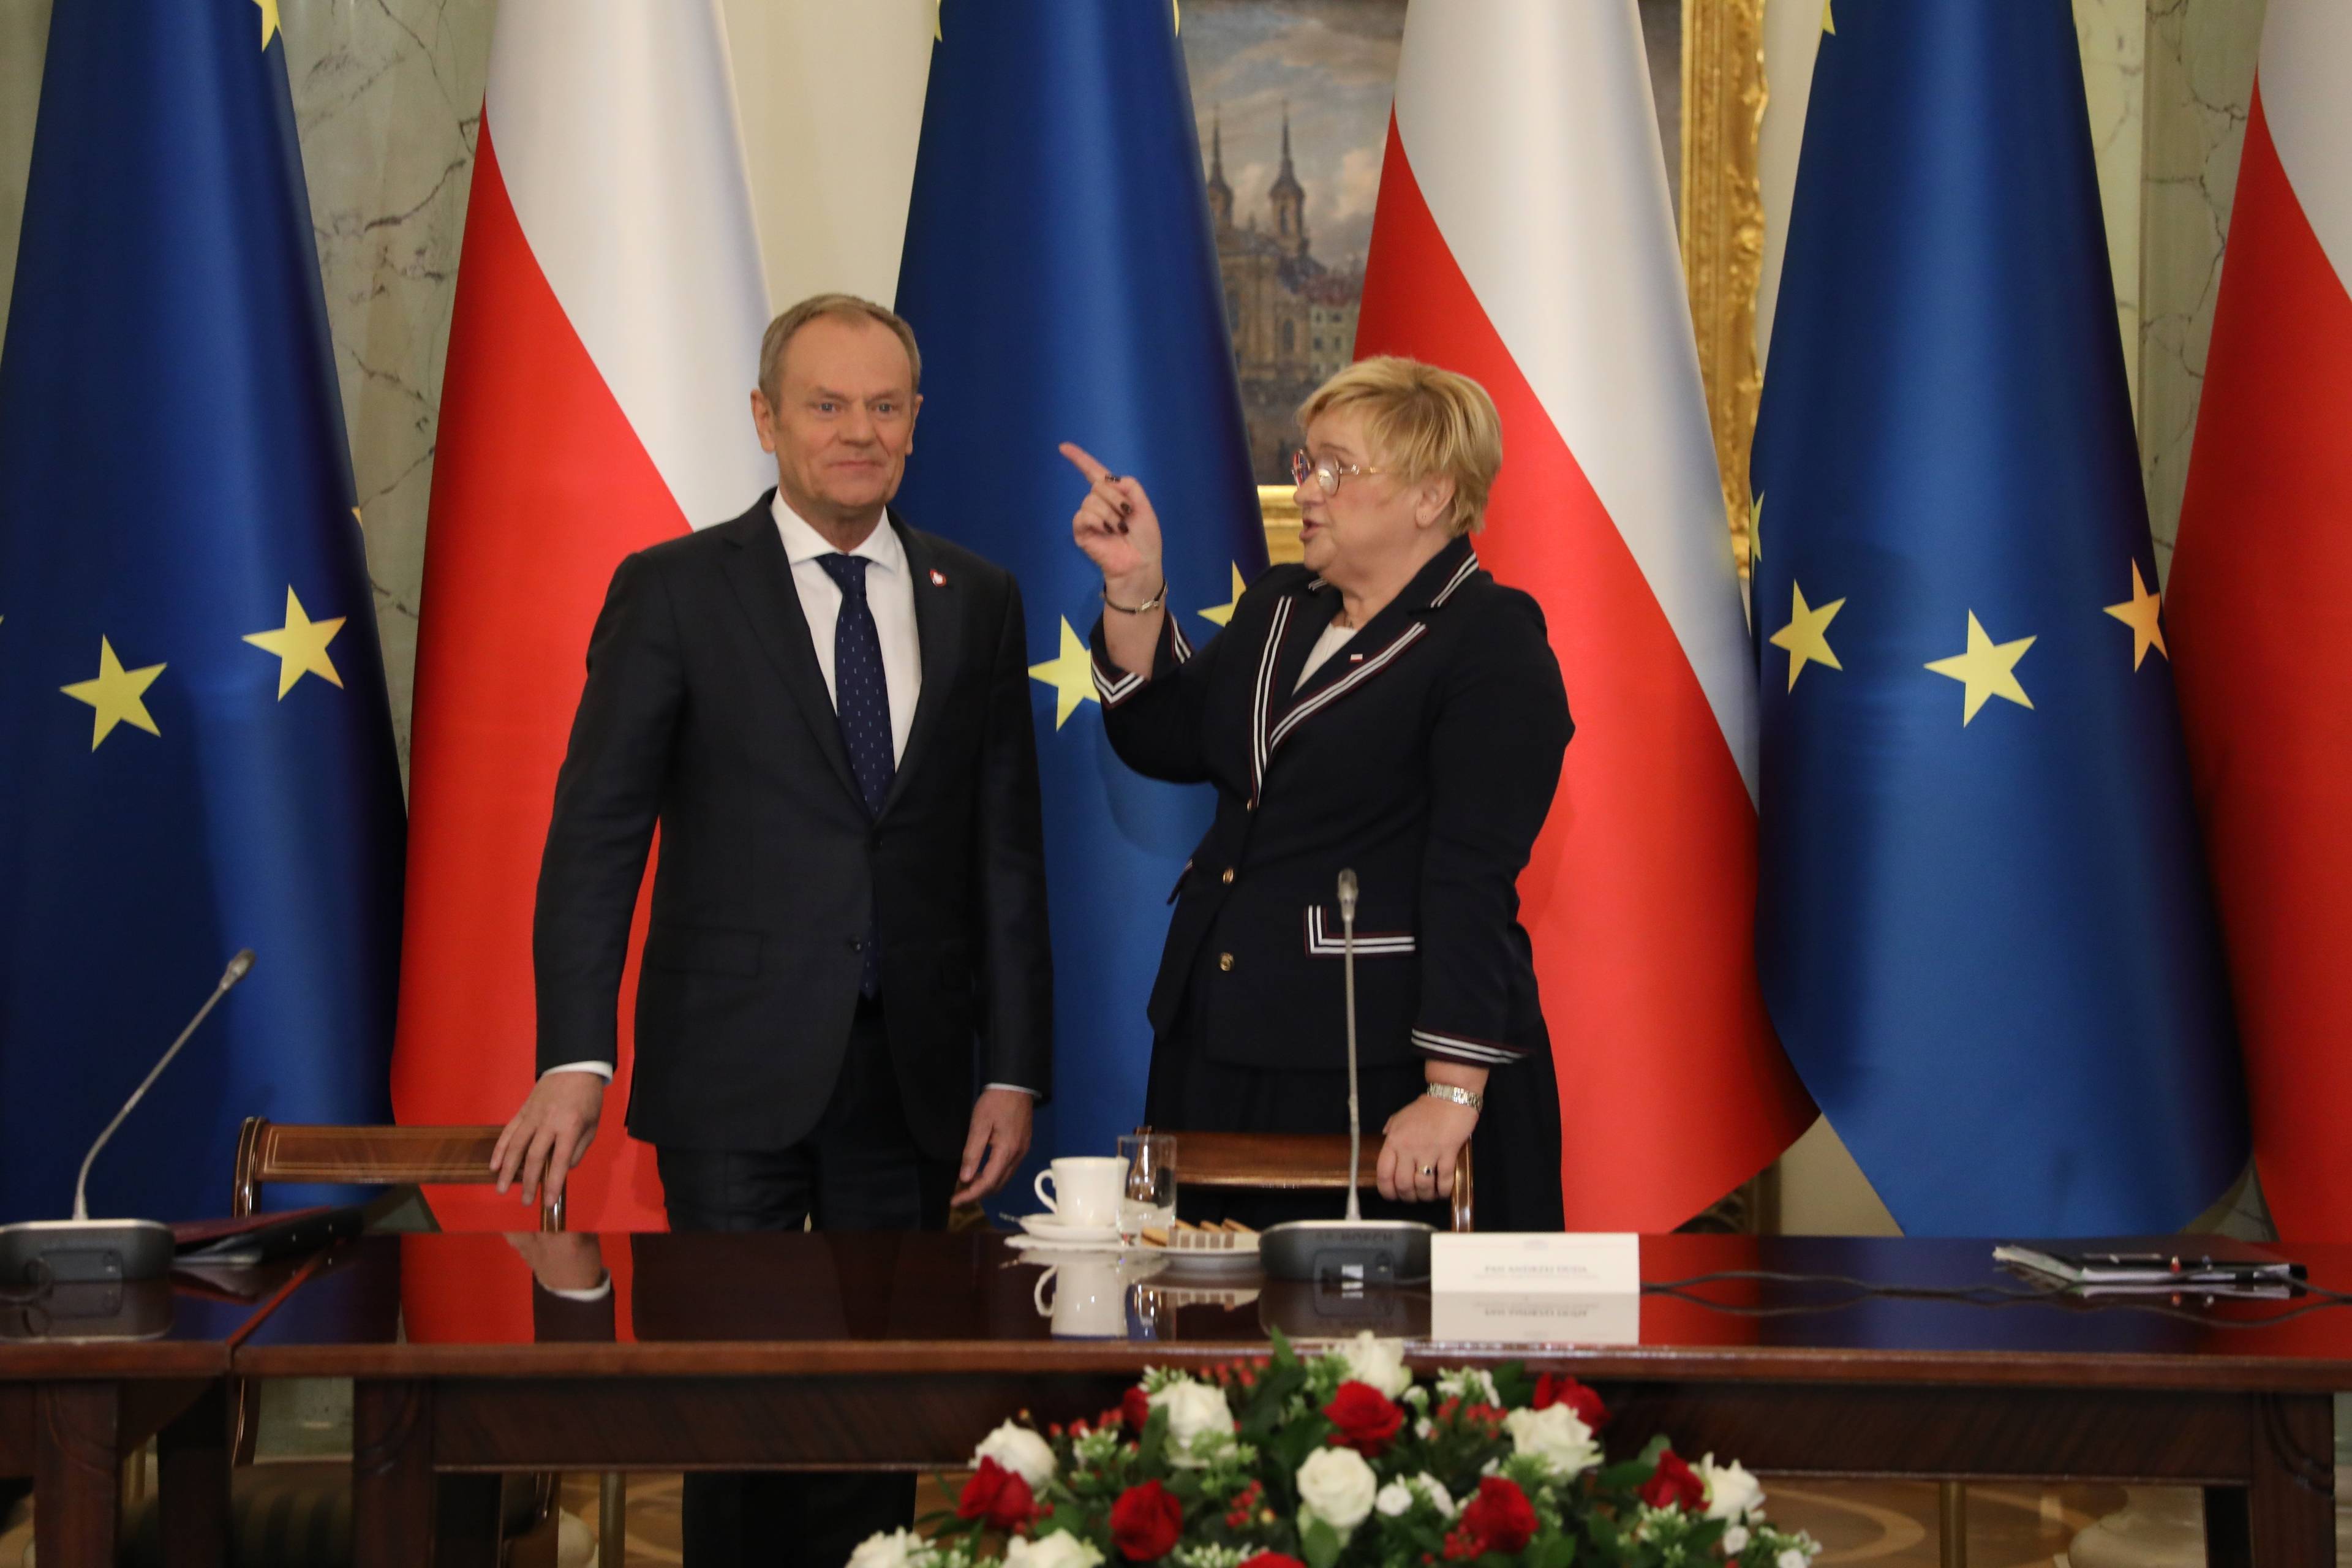 Kobieta w ciemnej garsonce (po prawej) wskazuje palcem na Donalda Tuska (po lewej). W tle flagi polski i Unii Europejskiej